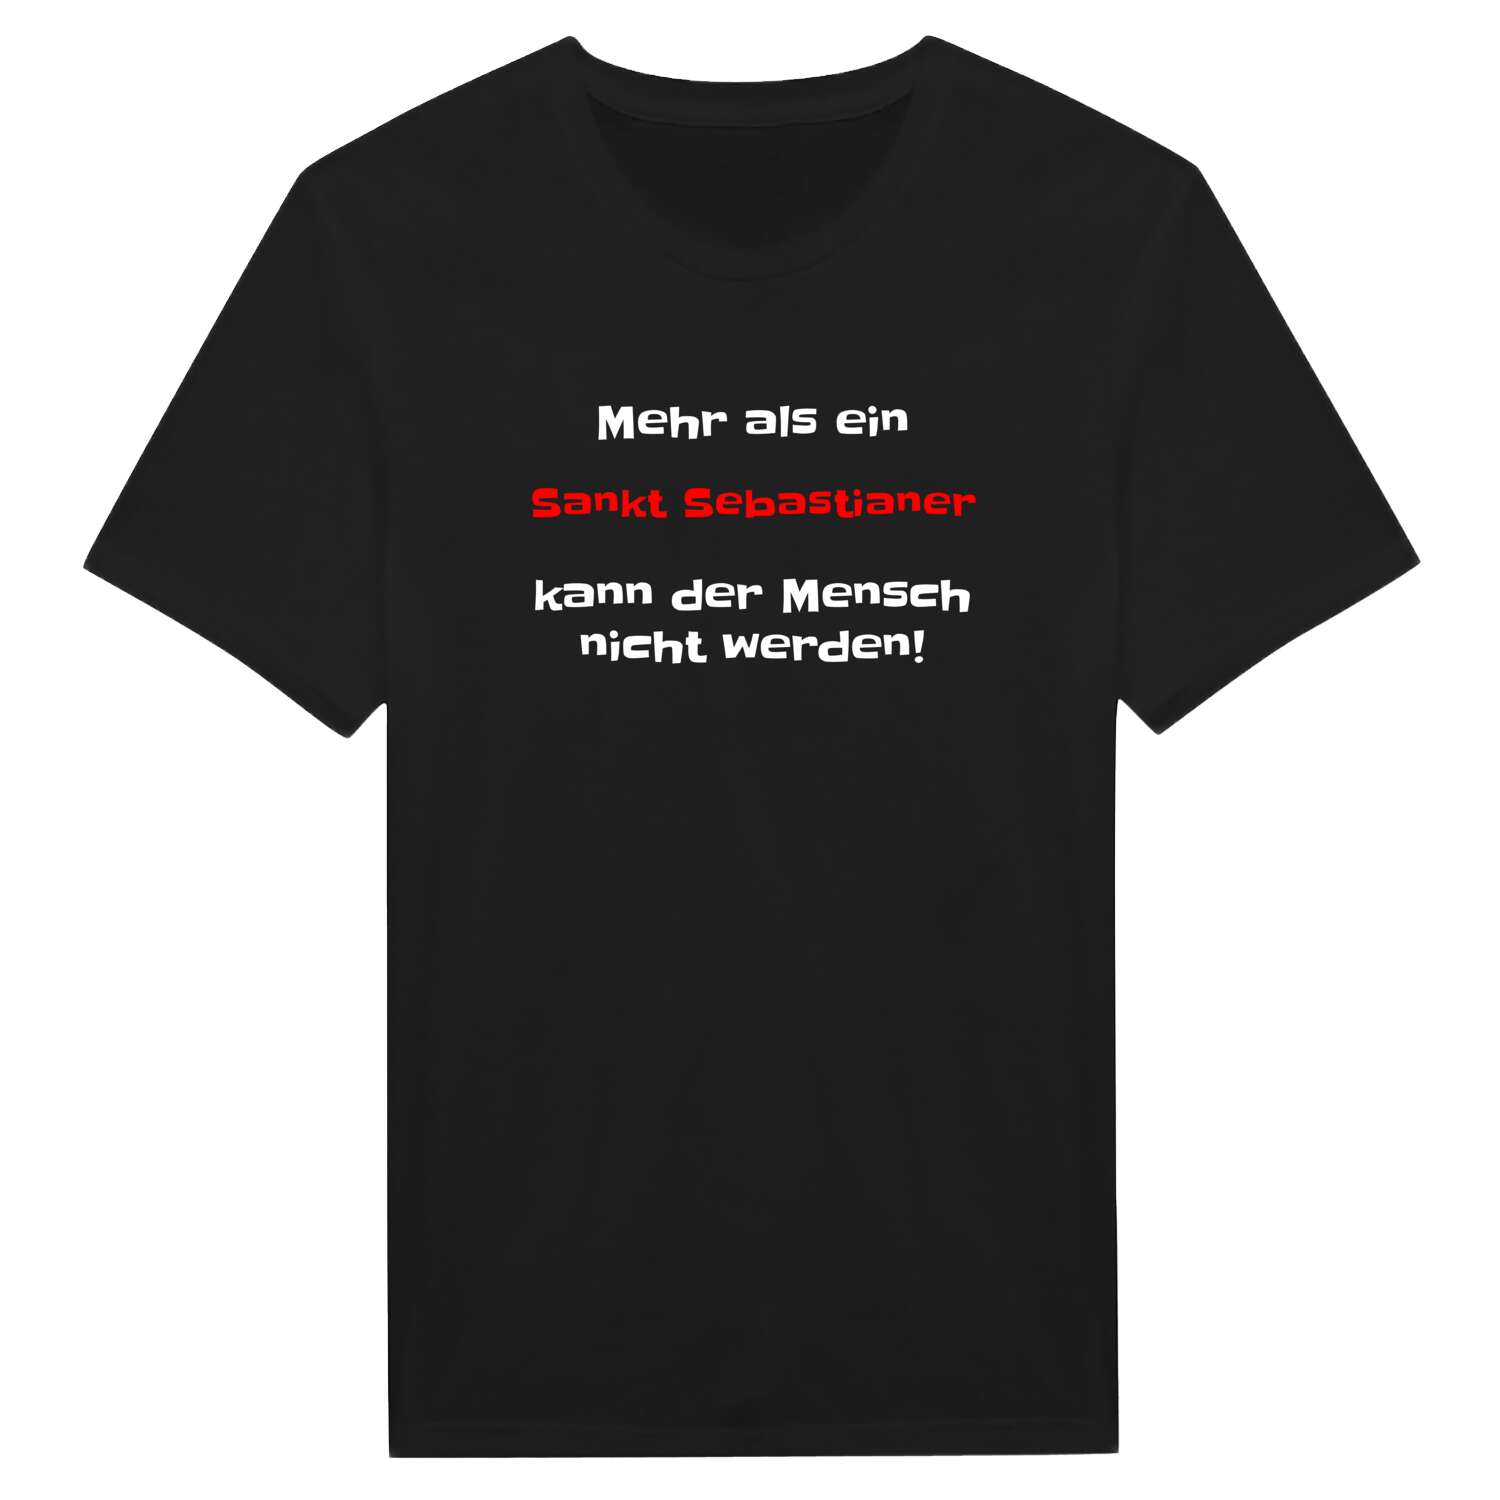 Sankt Sebastian T-Shirt »Mehr als ein«